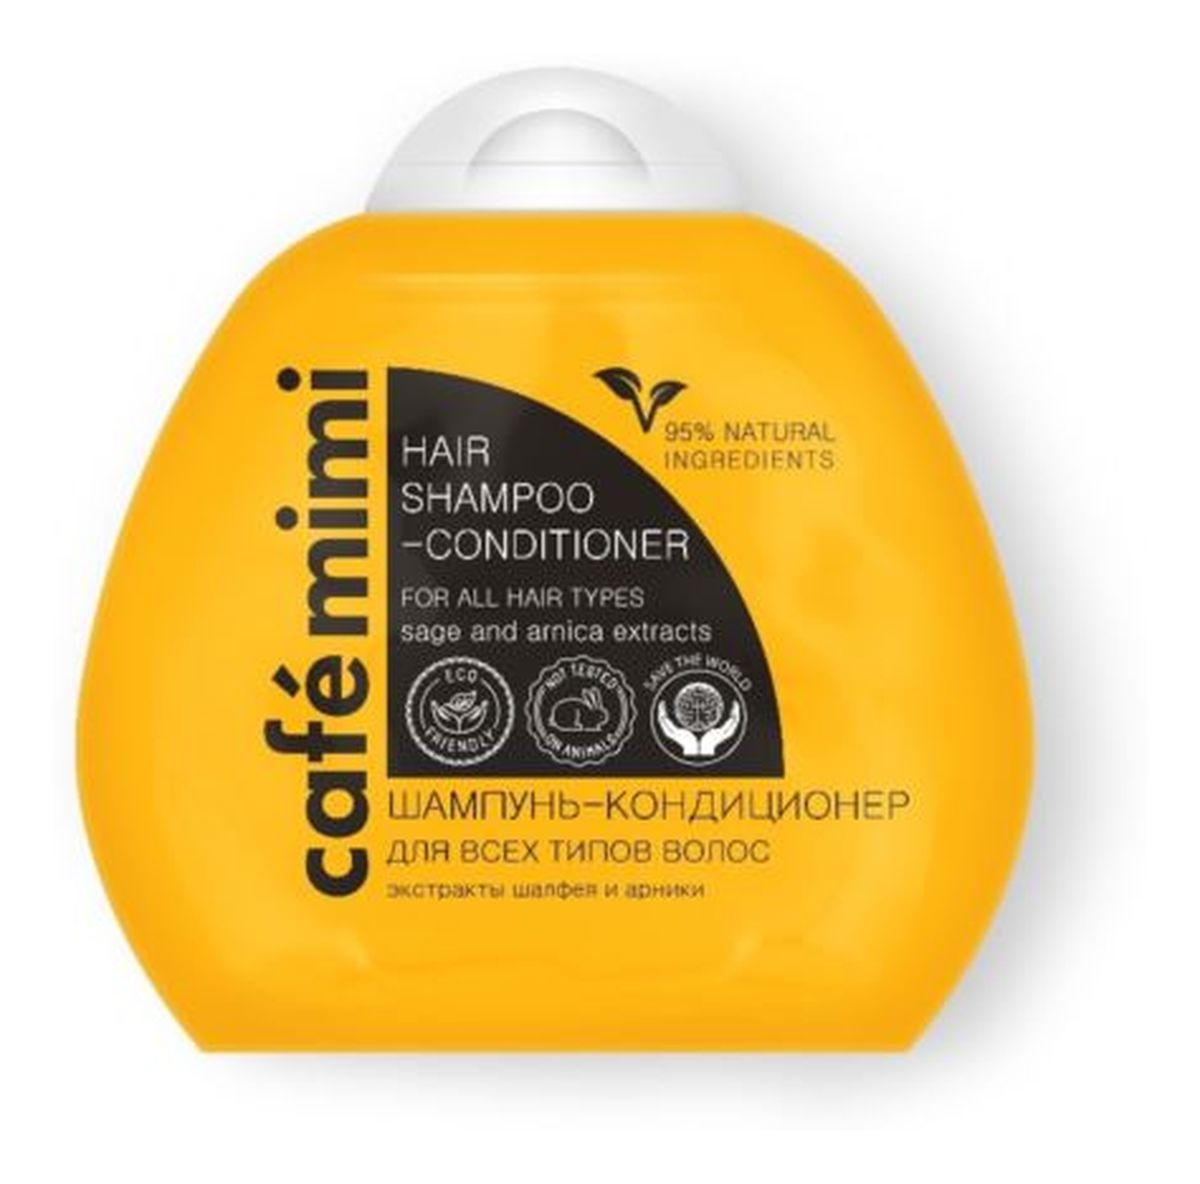 Szampon -kondycjoner do włosów 2w1 - dla wszystkich typów włosów - ekstrakt szałwii, ekstrakt arniki, roślinne proteiny, witaminy B5, B3, B5, C, E, - 95% składników naturalnych